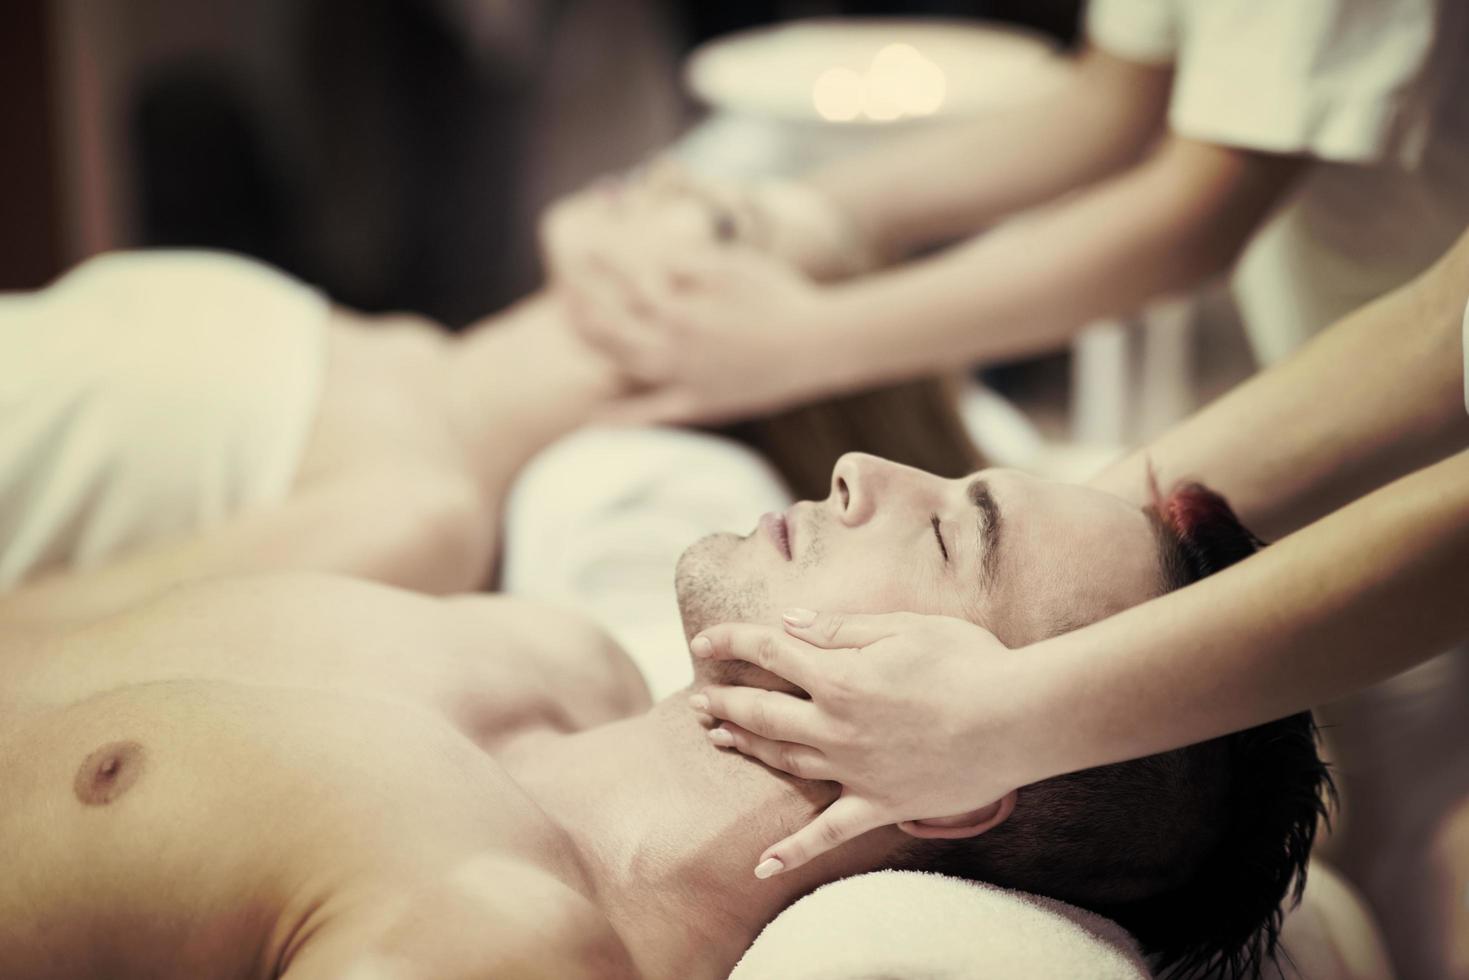 pareja joven relajada recibiendo masajes en el spa foto